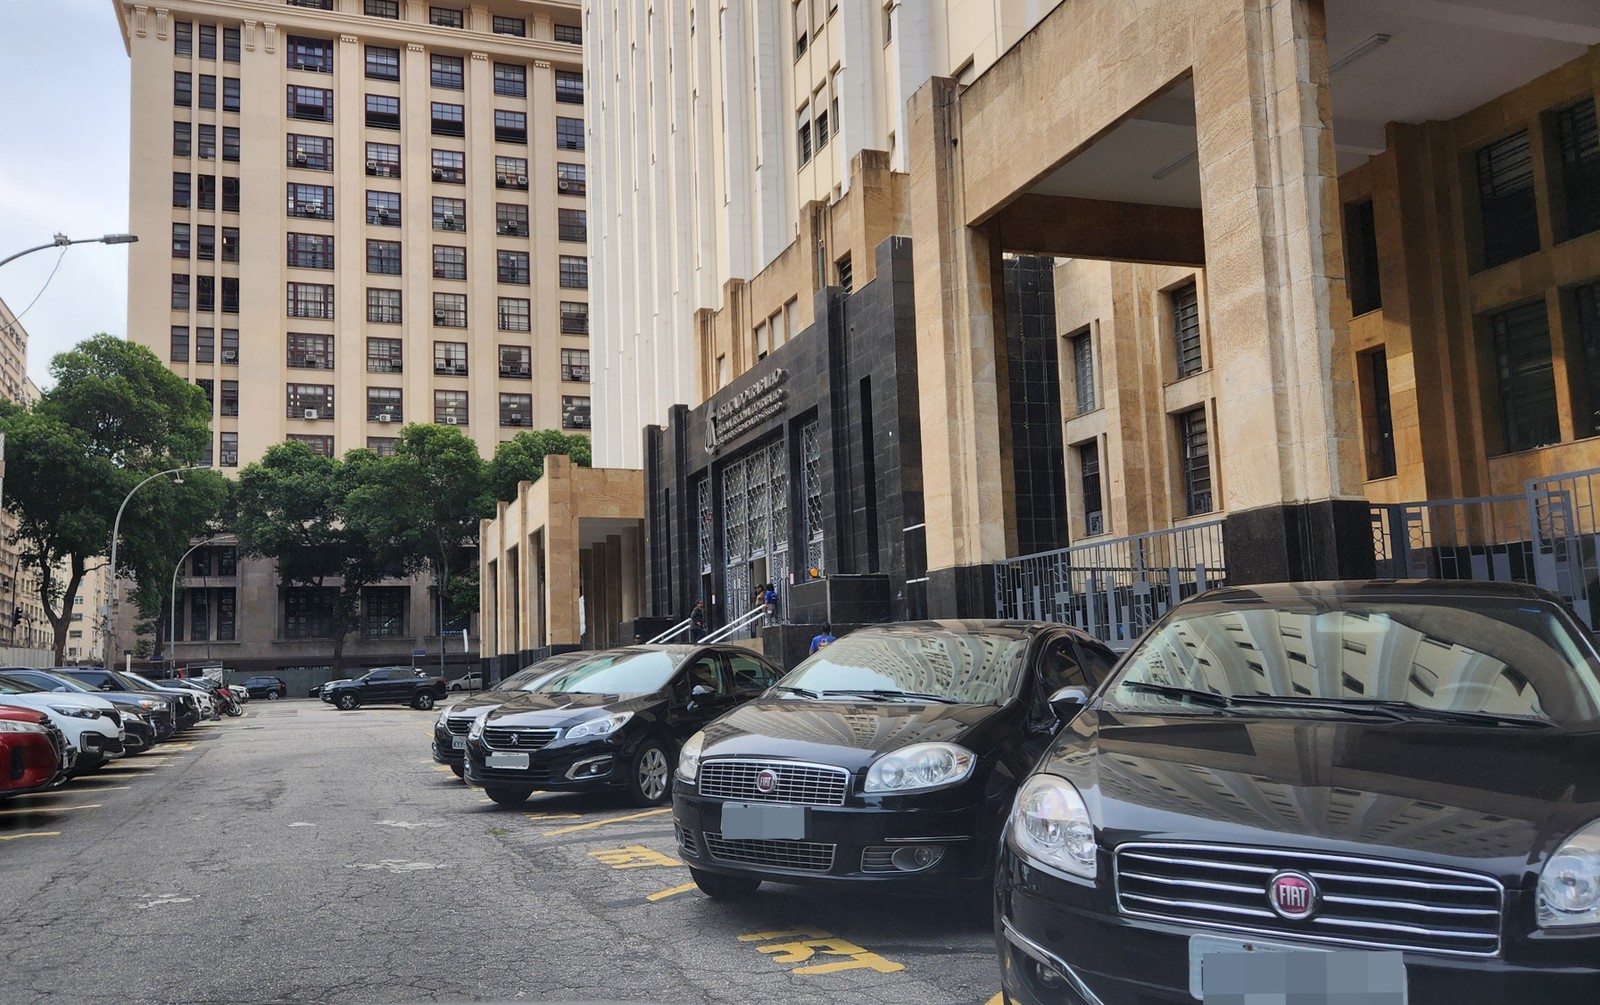 Na Rua da Imprensa, segundo relatório do vereador, em vez de 15, o Tribunal Regional do Trabalho ocupa 74 vagas — Foto: Lucas Tavares